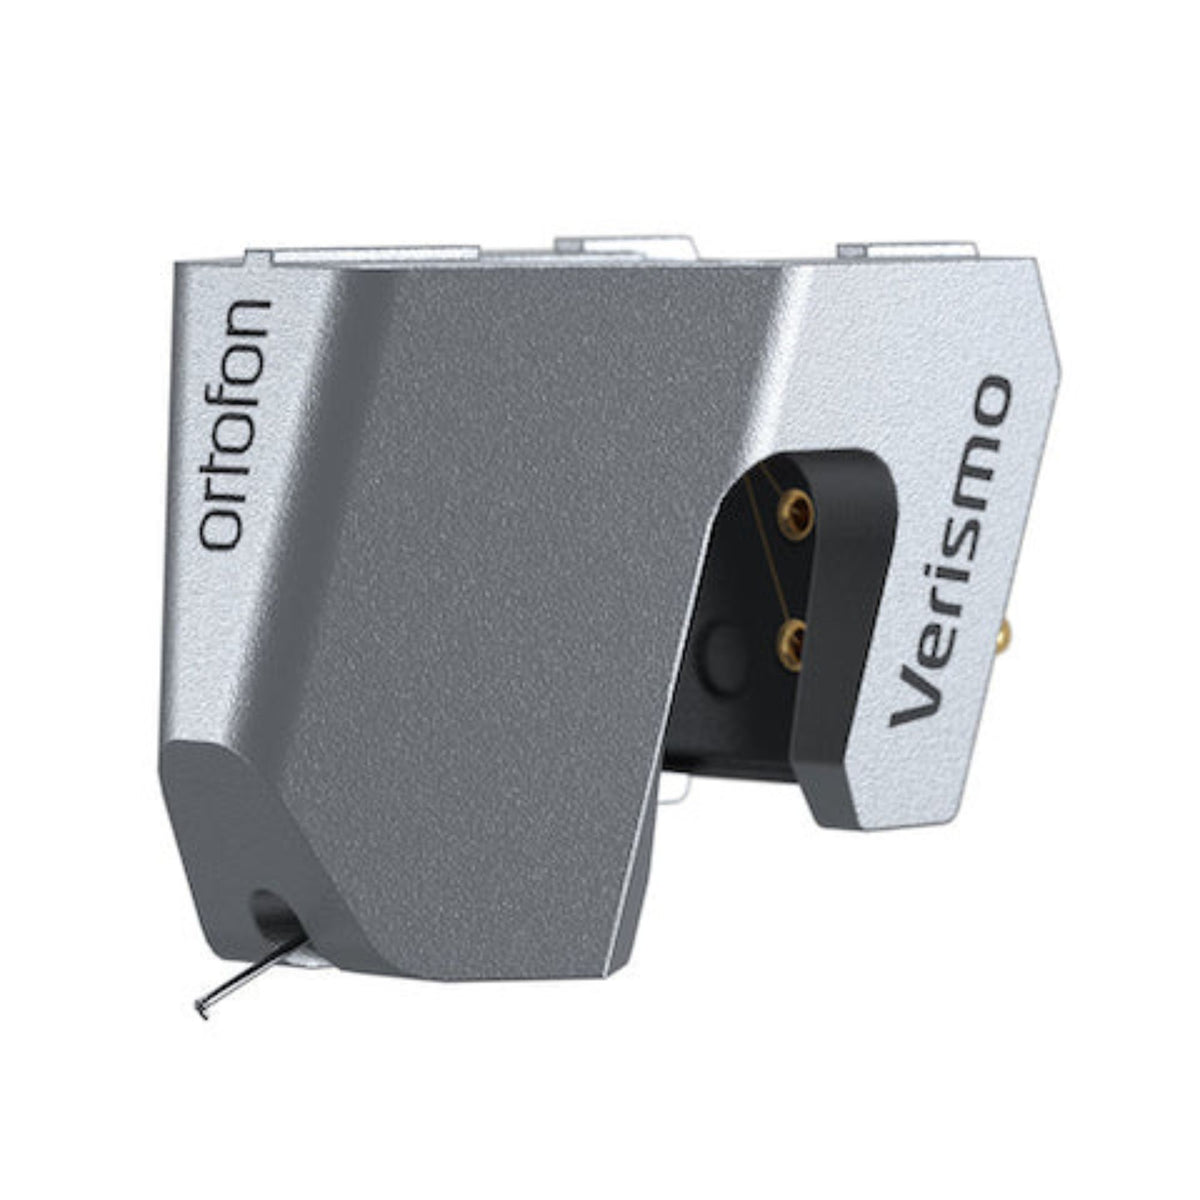 Ortofon MC Verismo - Exclusive Moving Coil Cartridge, Ortofon, Turntable Accessories - AVStore.in